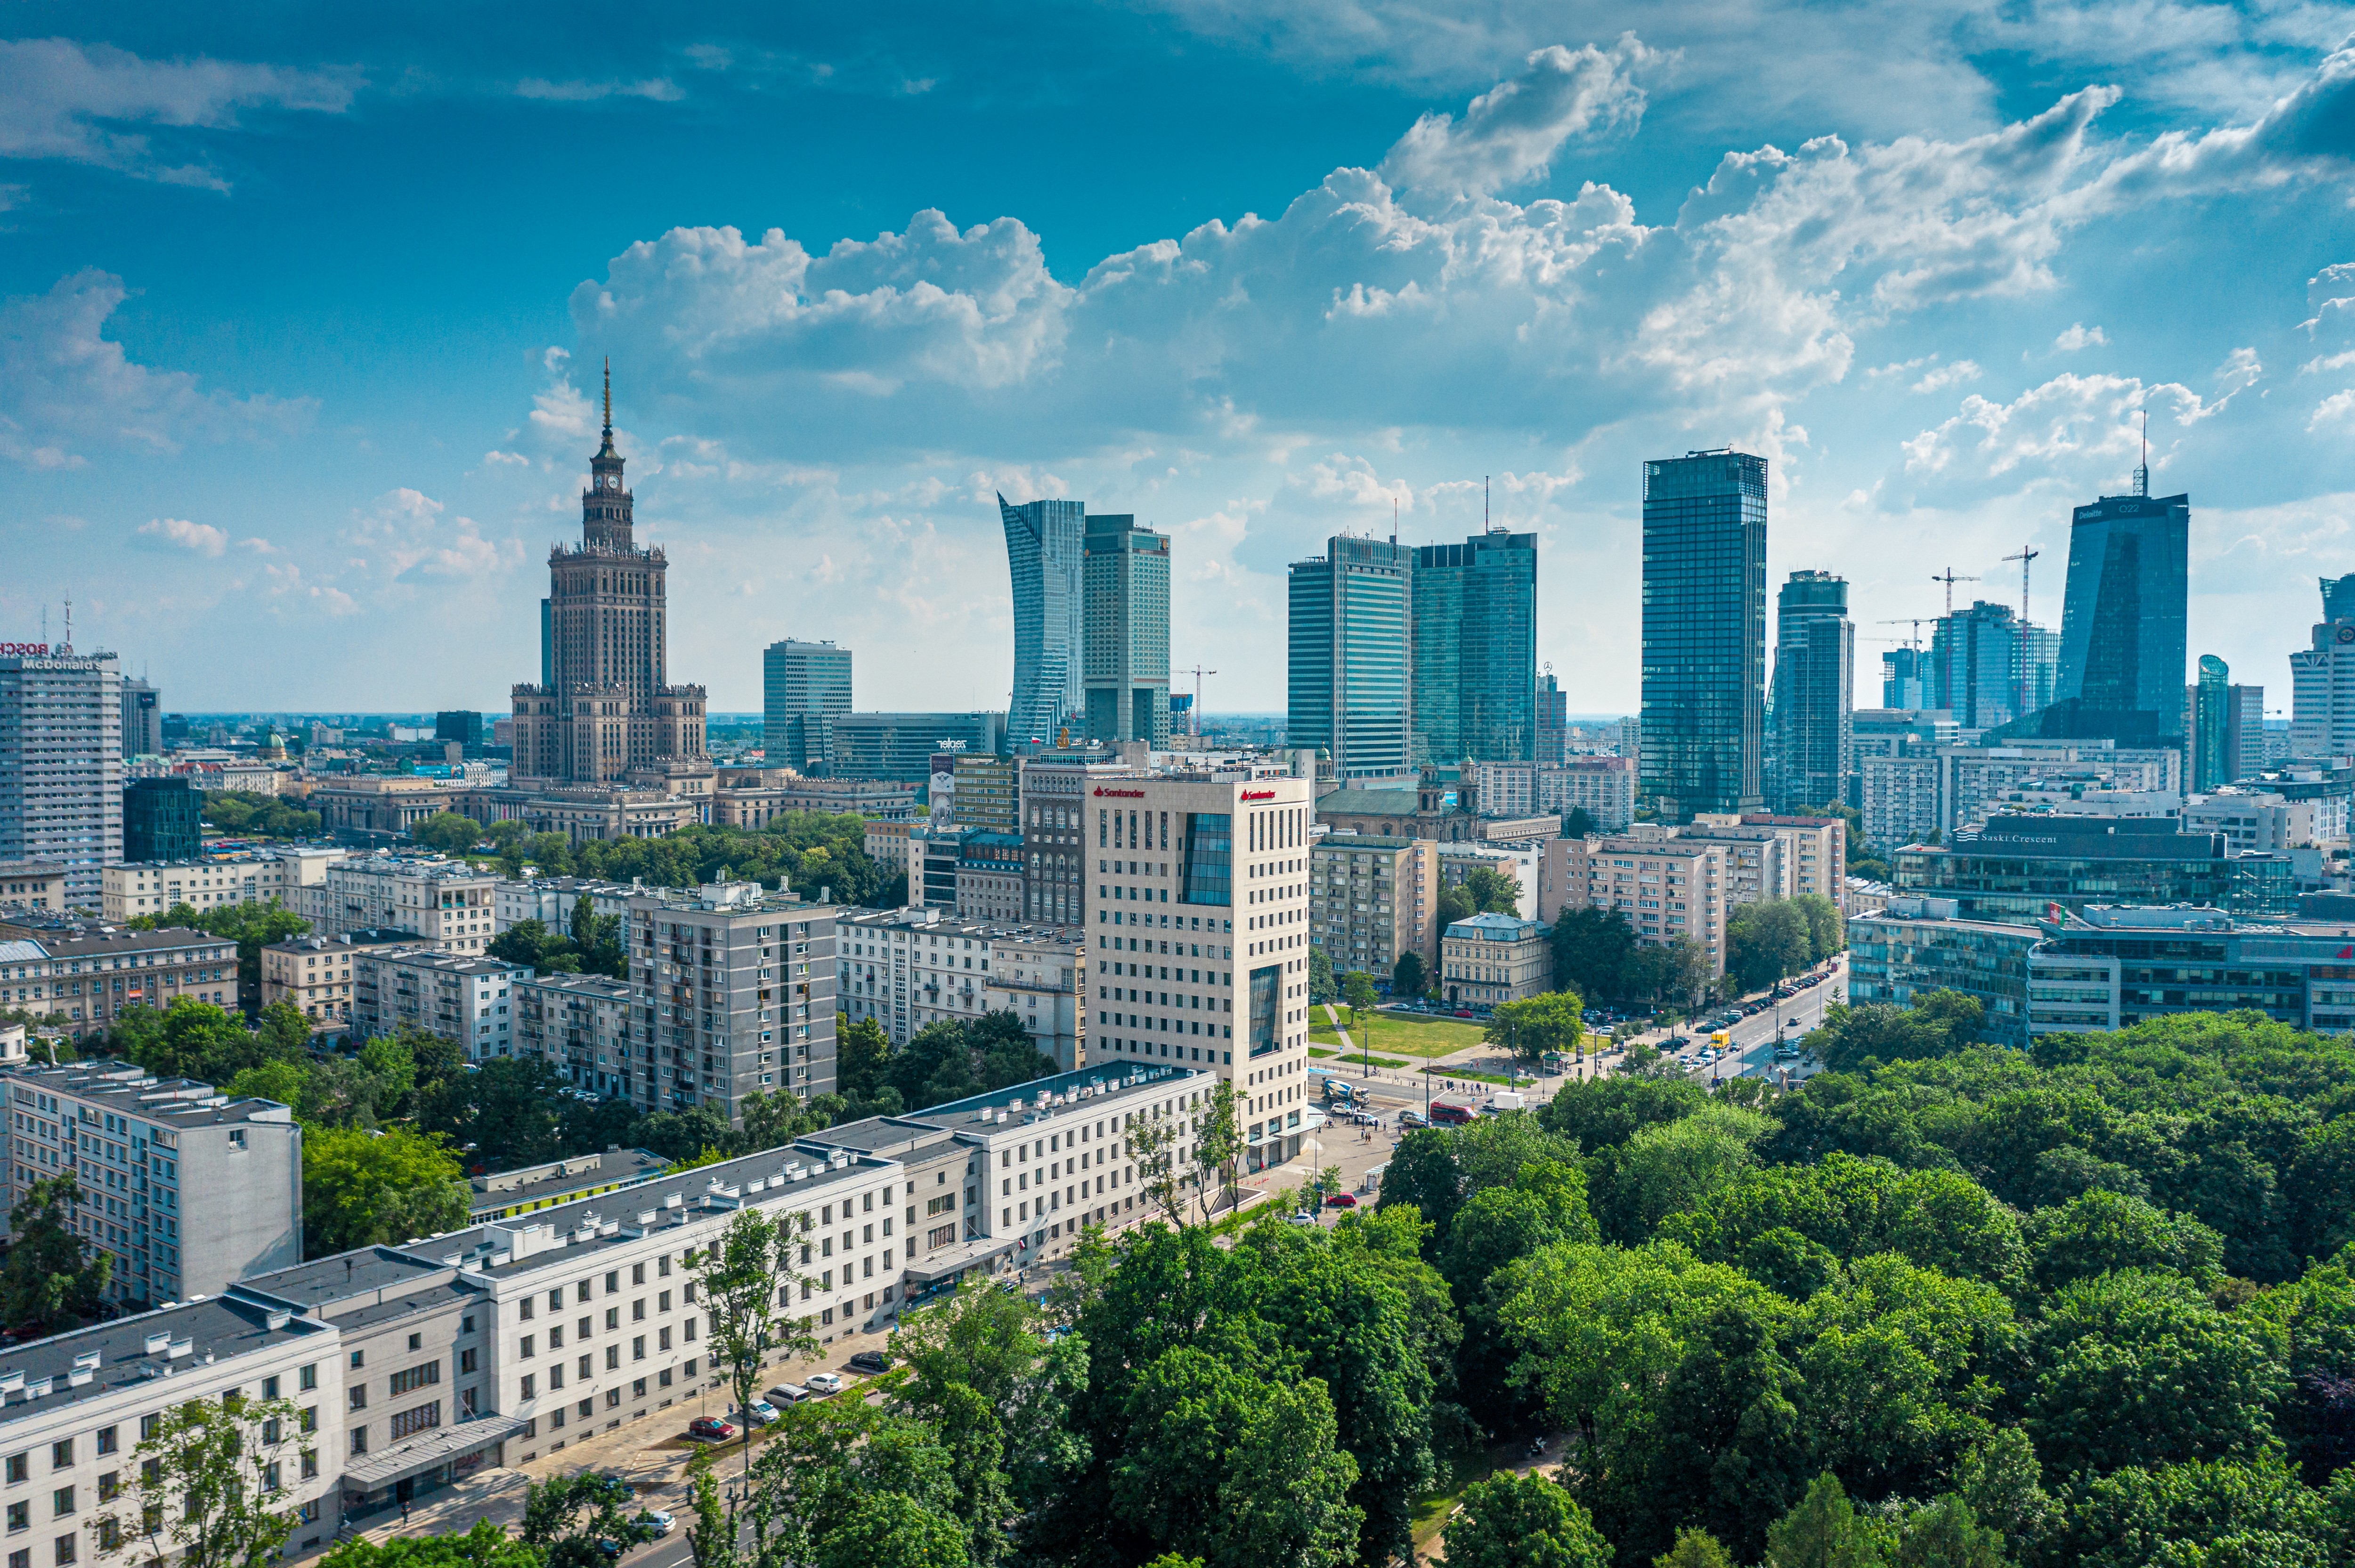 Od stycznia 2022 roku do stycznia 2023 roku średni wzrost cen wynajmu mieszkań dwu- i trzypokojowych w Polsce wyniósł 29,61 proc.